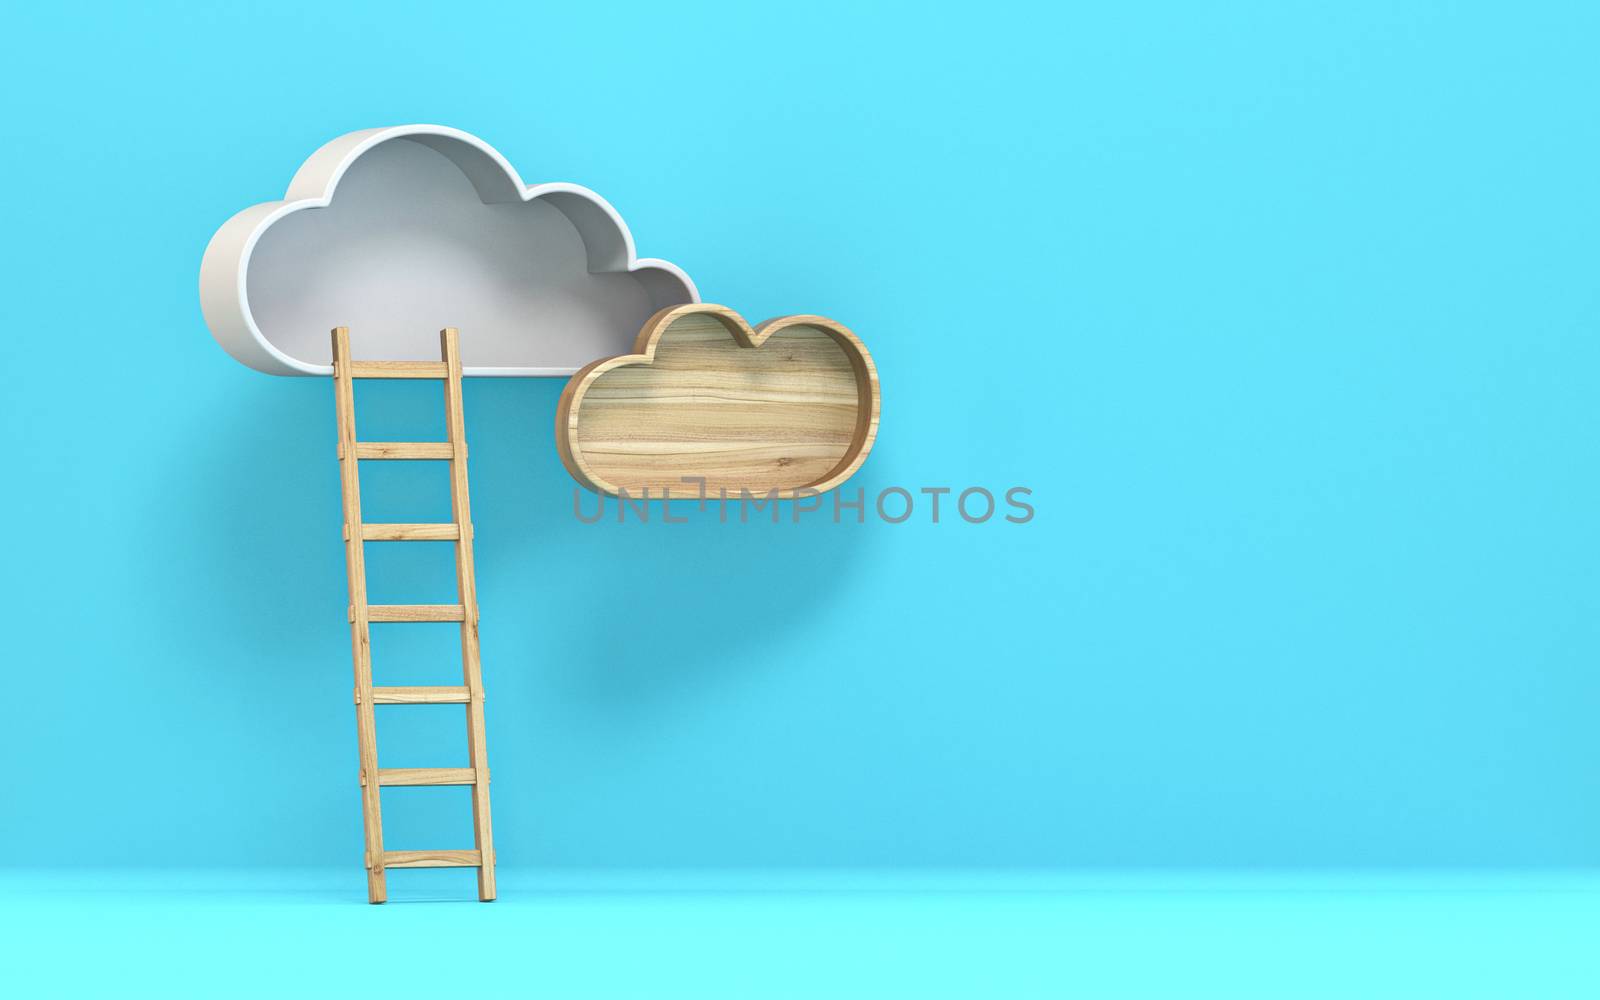 Cloud with ladder 3D render illustration on blue background